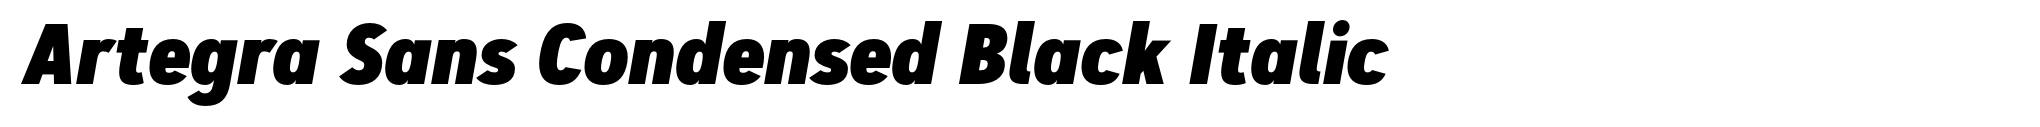 Artegra Sans Condensed Black Italic image